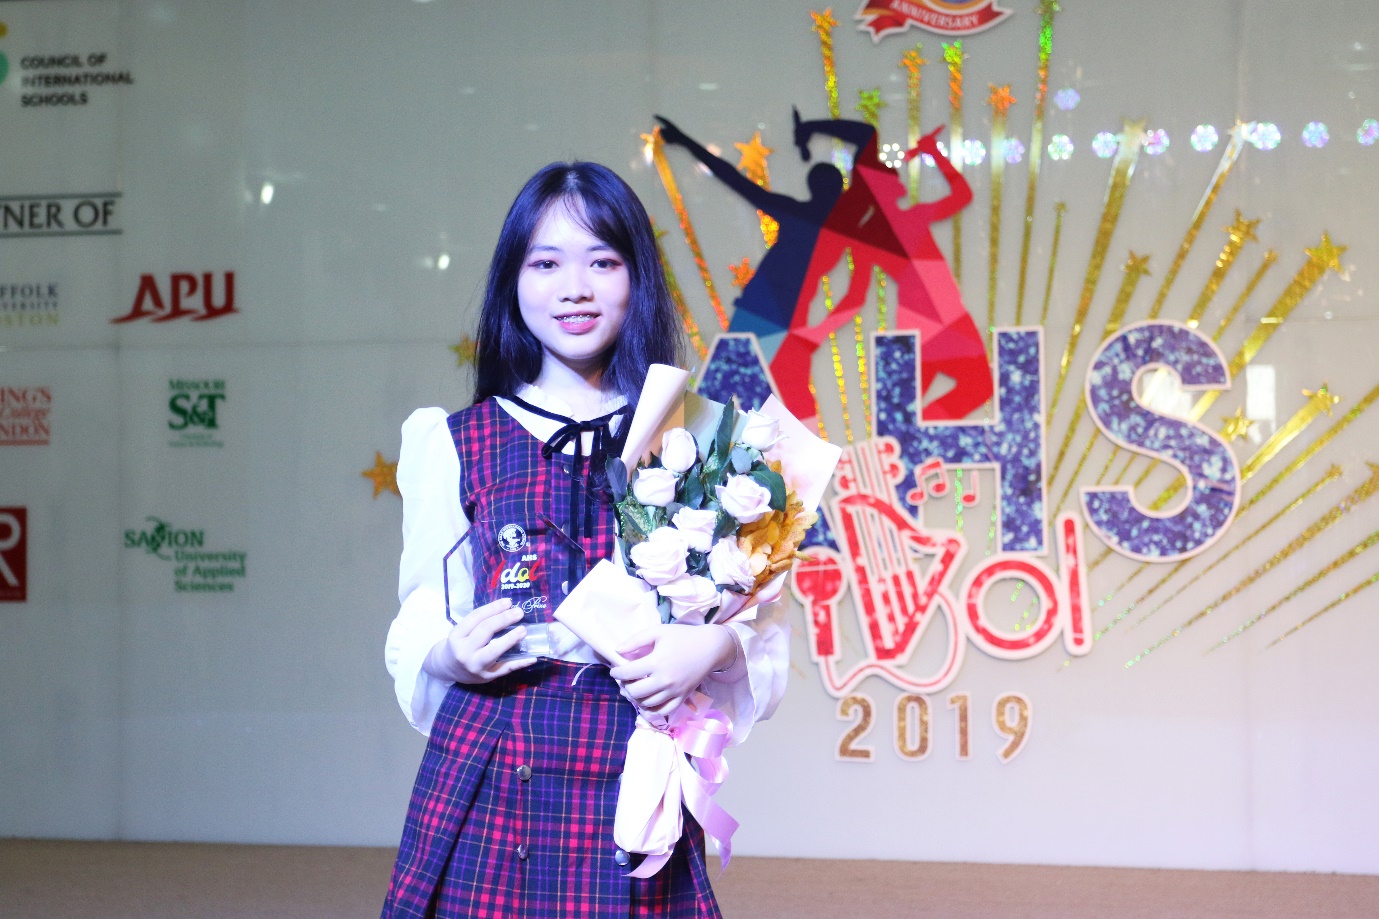 Bùng nổ cảm xúc cùng các ngôi sao âm nhạc tại vòng chung kết AHS Idol 2019